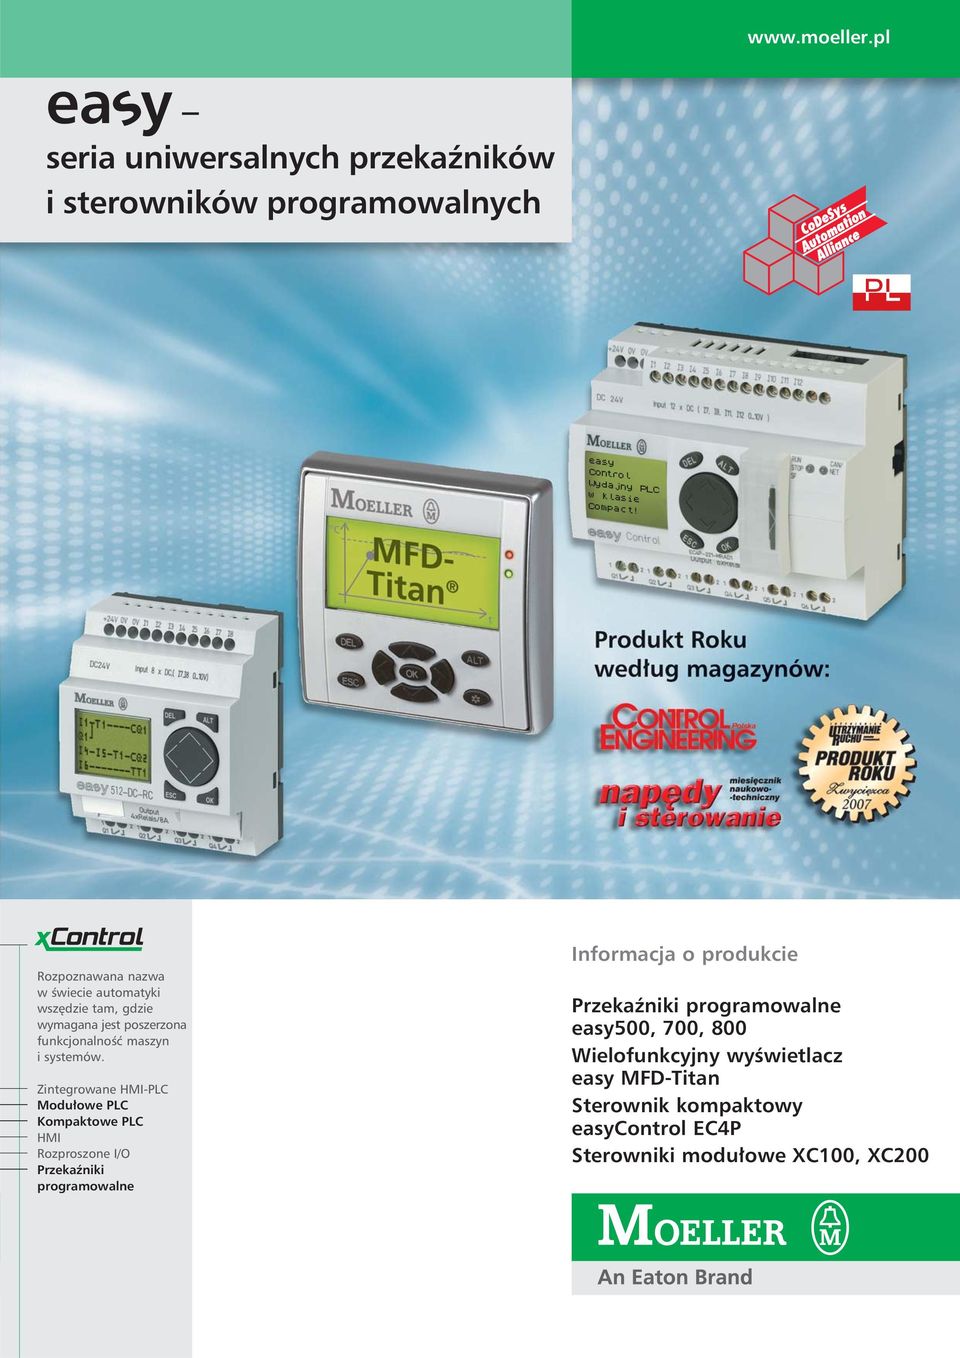 Zintegrowane HMI-PLC Modułowe PLC Kompaktowe PLC HMI Rozproszone I/O Przekaźniki programowalne Informacja o produkcie Przekaźniki